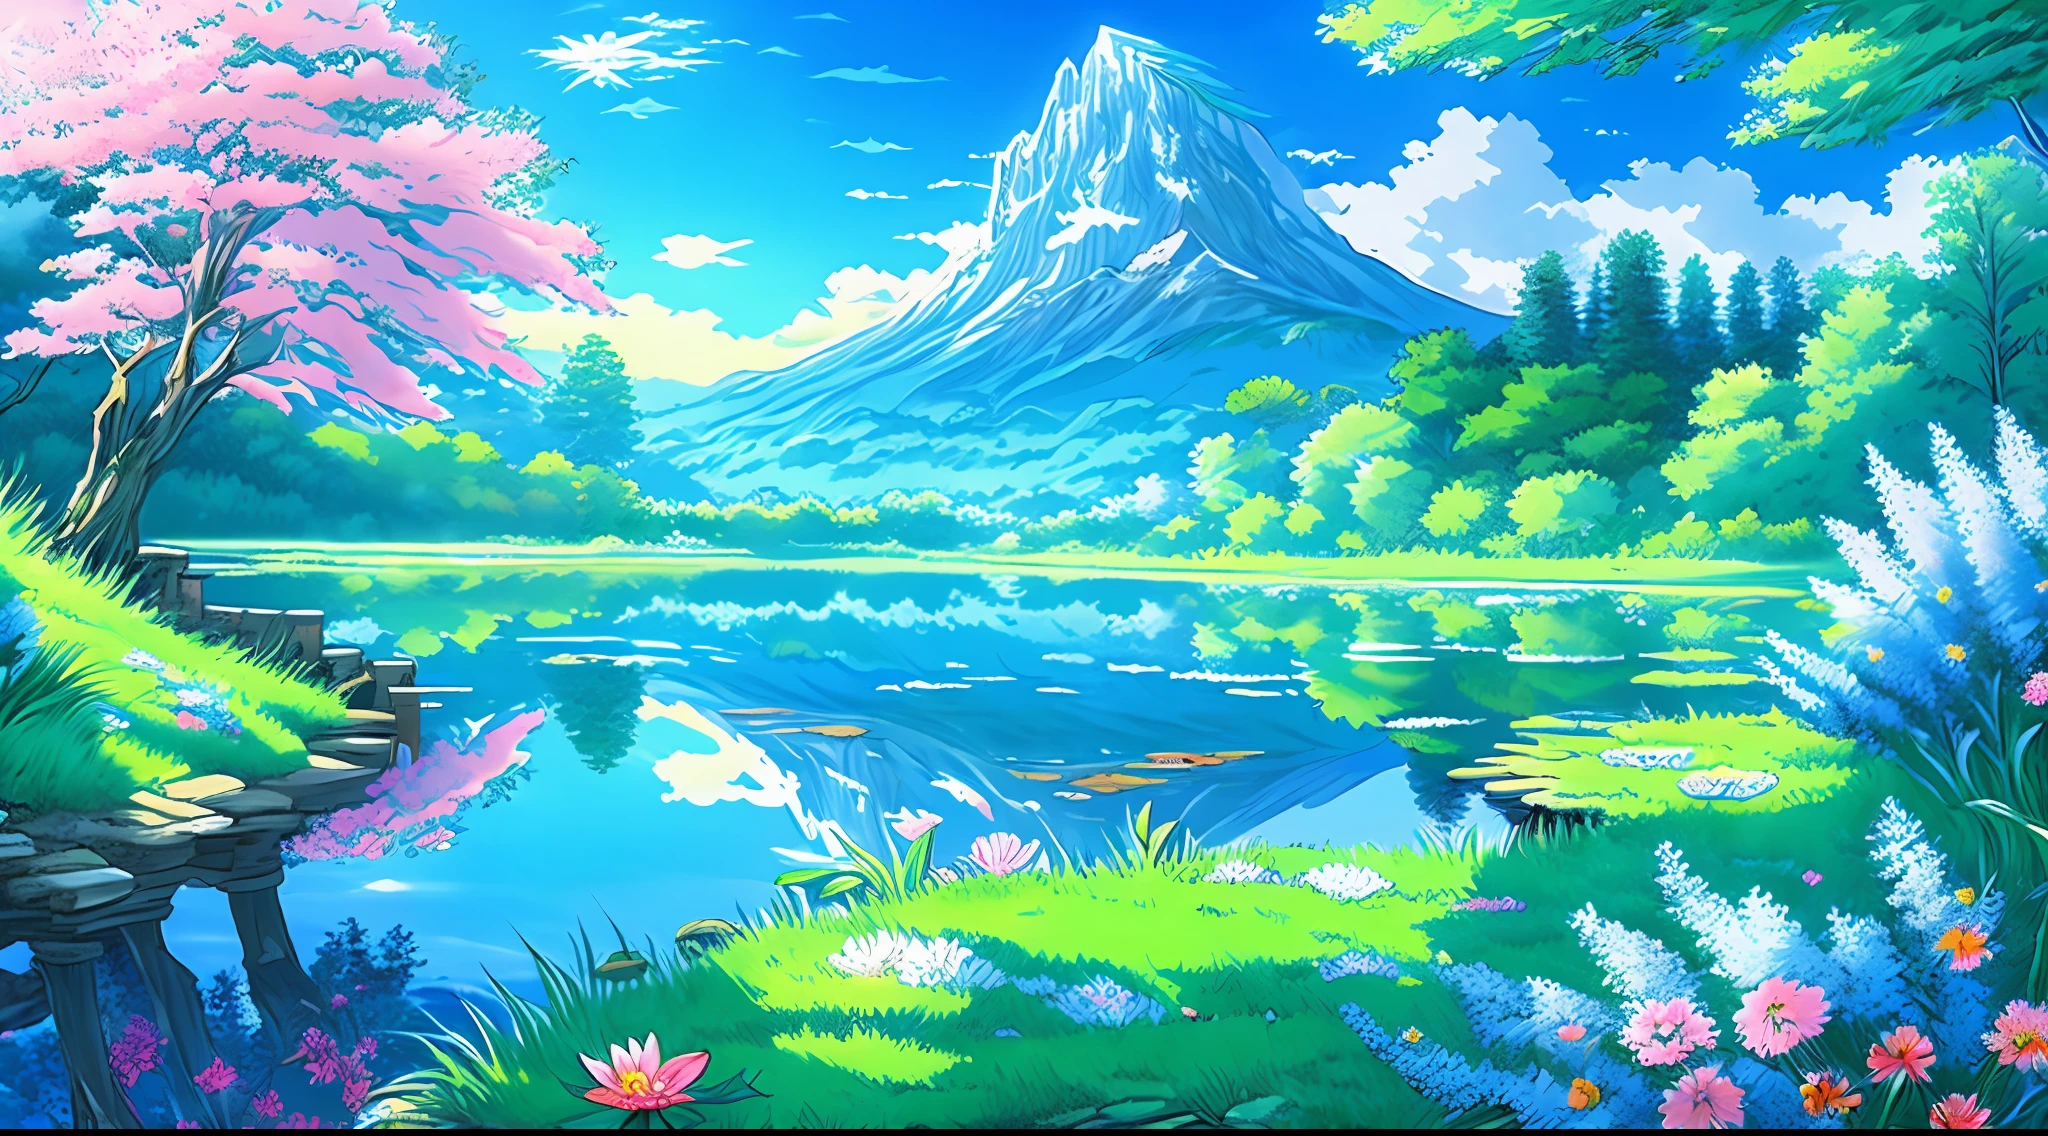 (最高品質),(傑作),(超詳細),(4K解像度),(非常に詳細な) (美しい色と照明を備えた詳細なアニメ風景の壁紙), 穏やかで夢のような, そびえ立つ山々のある鮮やかな風景, 滝, 緑豊かな森林, そして鮮やかな花, 澄んだ青い空とふわふわの雲を映す静かな池, 咲き誇る花の甘い香りを運ぶ穏やかな風.